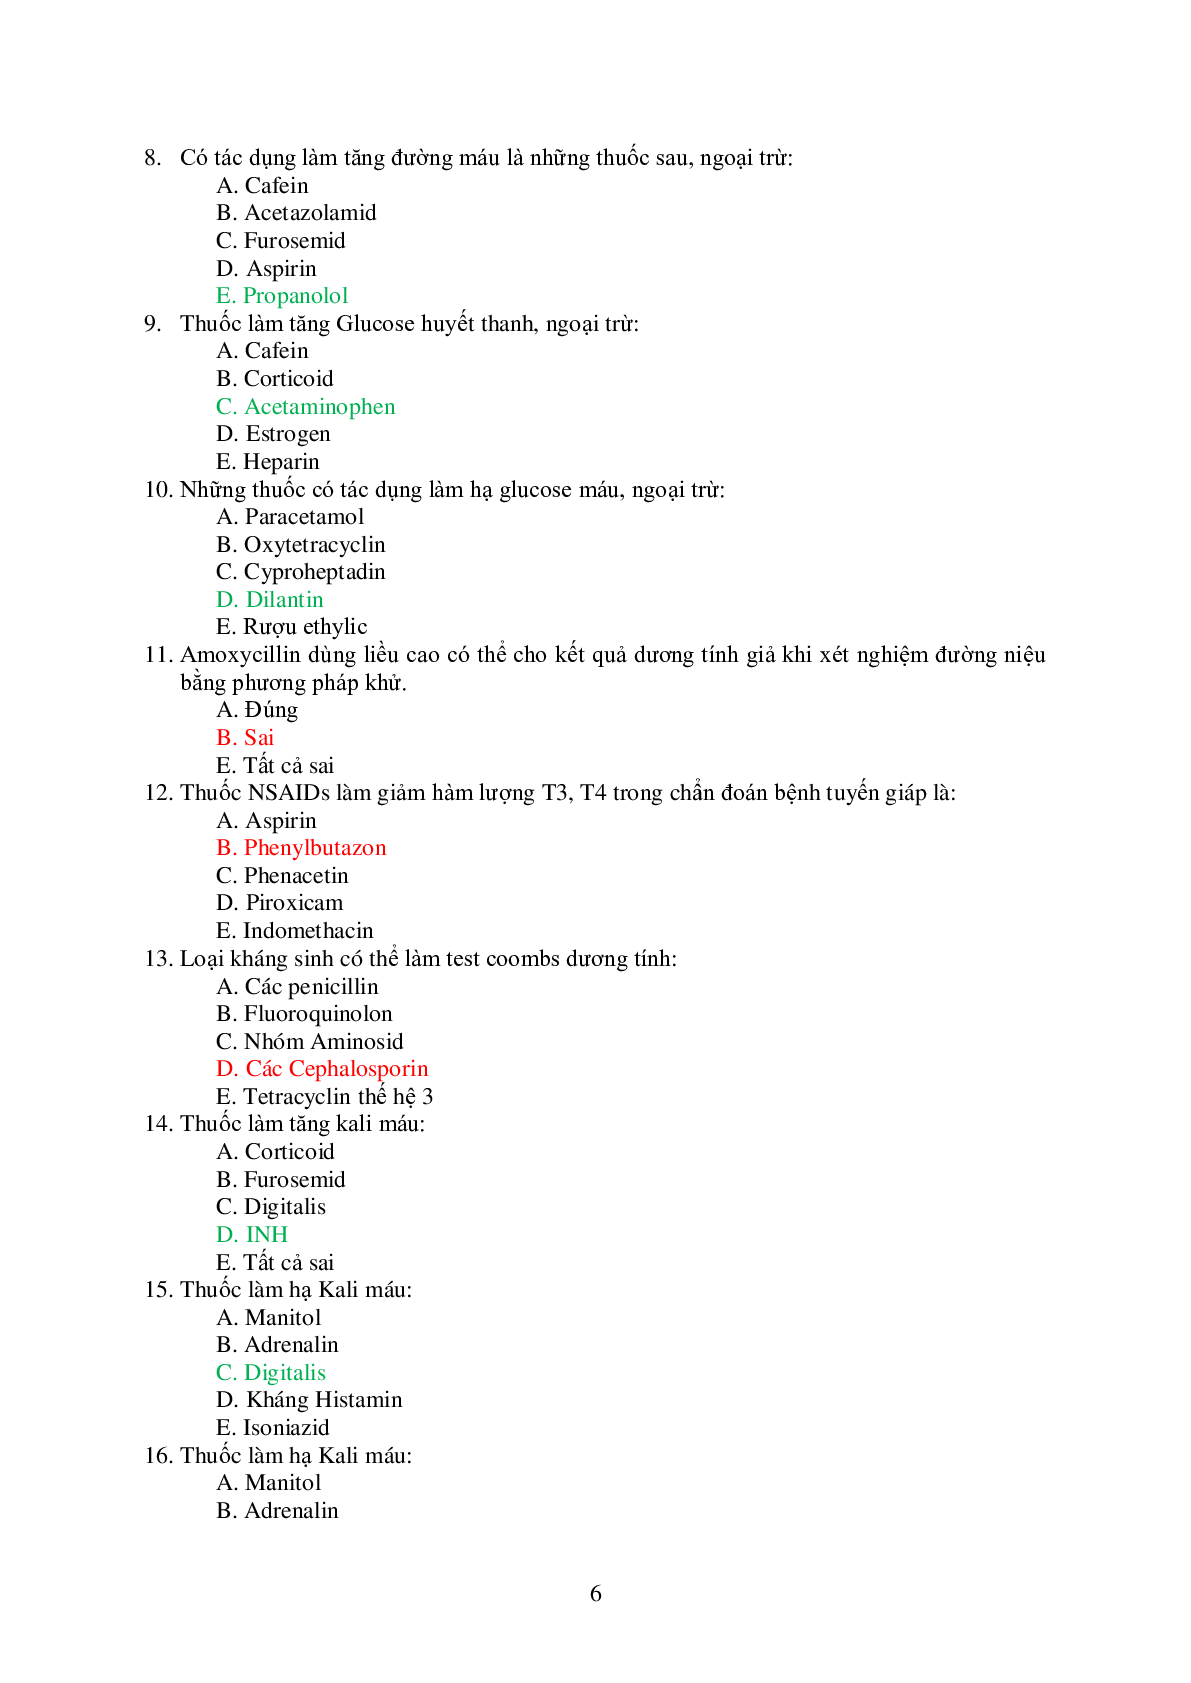 Ngân hàng bài tập trắc nghiệm Dược lý 2 (có đáp án) (trang 6)